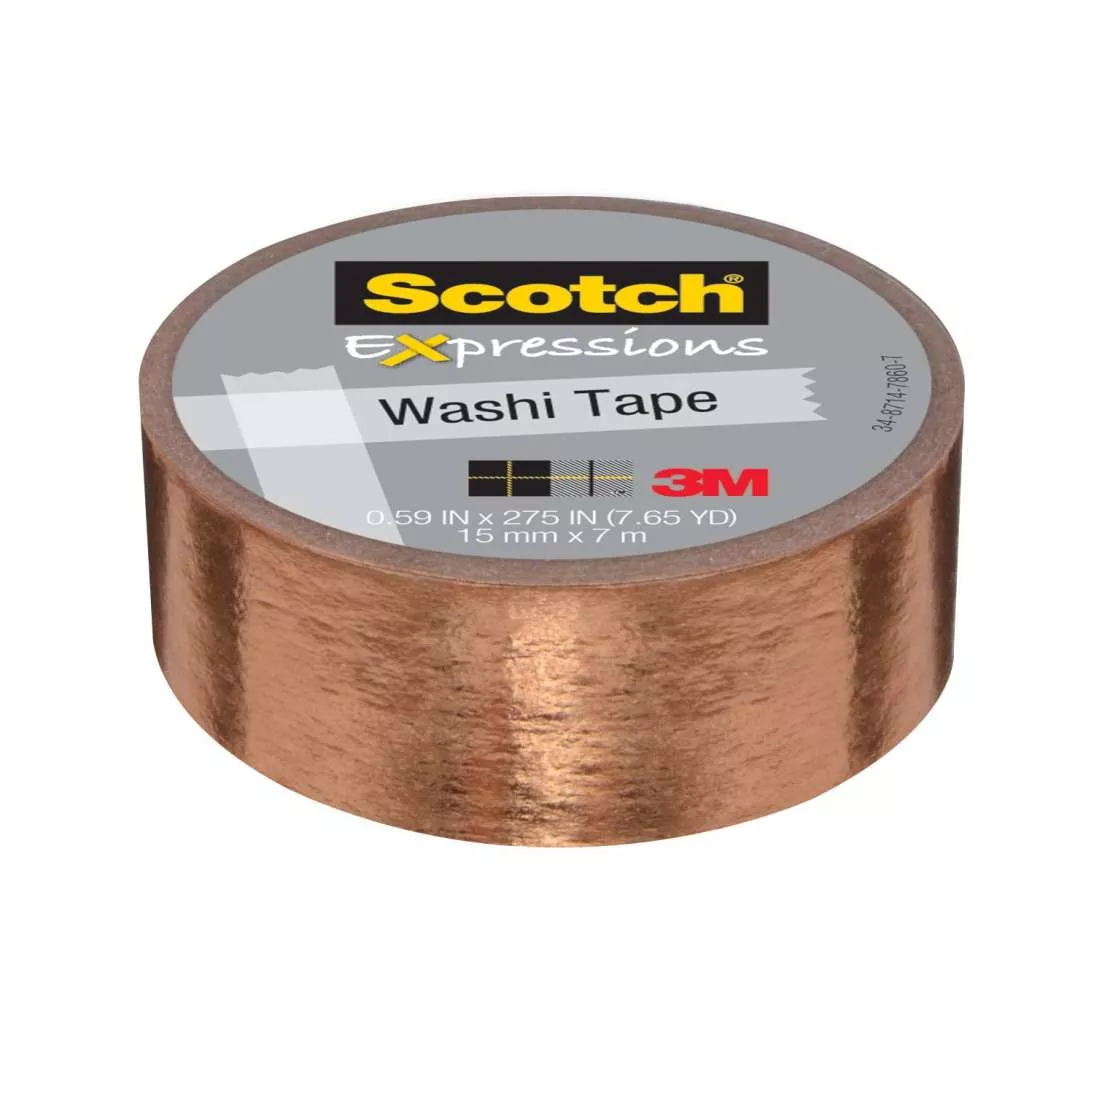 Scotch® Expressions Washi Tape C614-CPR, .59 in x 275 in (15 mm x 7 m)
Copper Foil